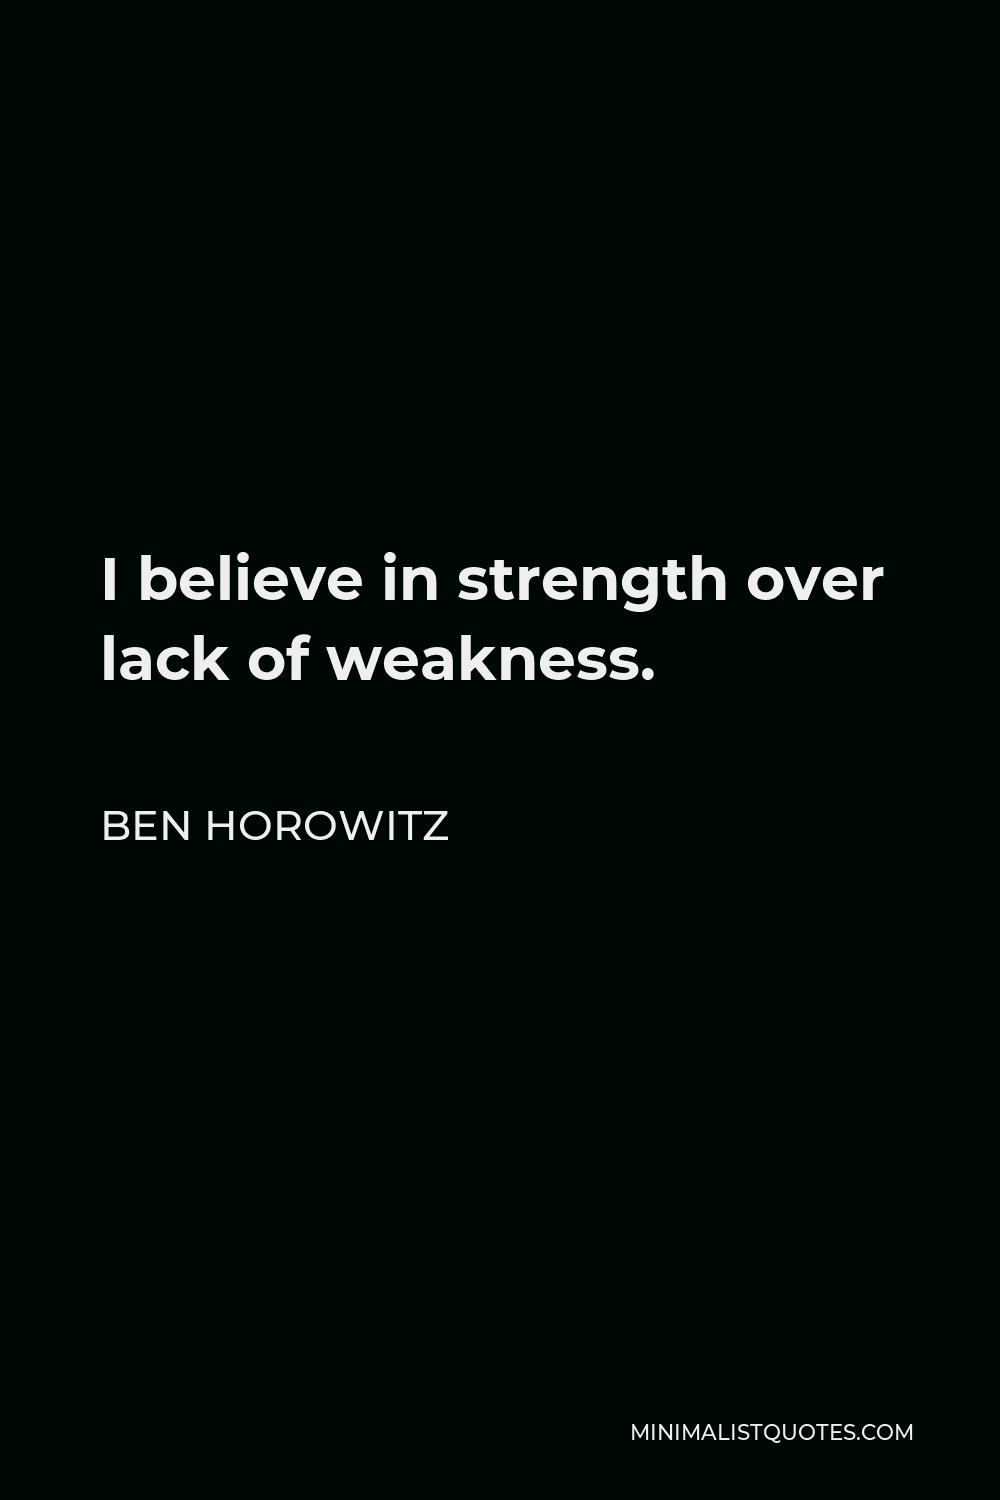 Ben Horowitz Quote - I believe in strength over lack of weakness.